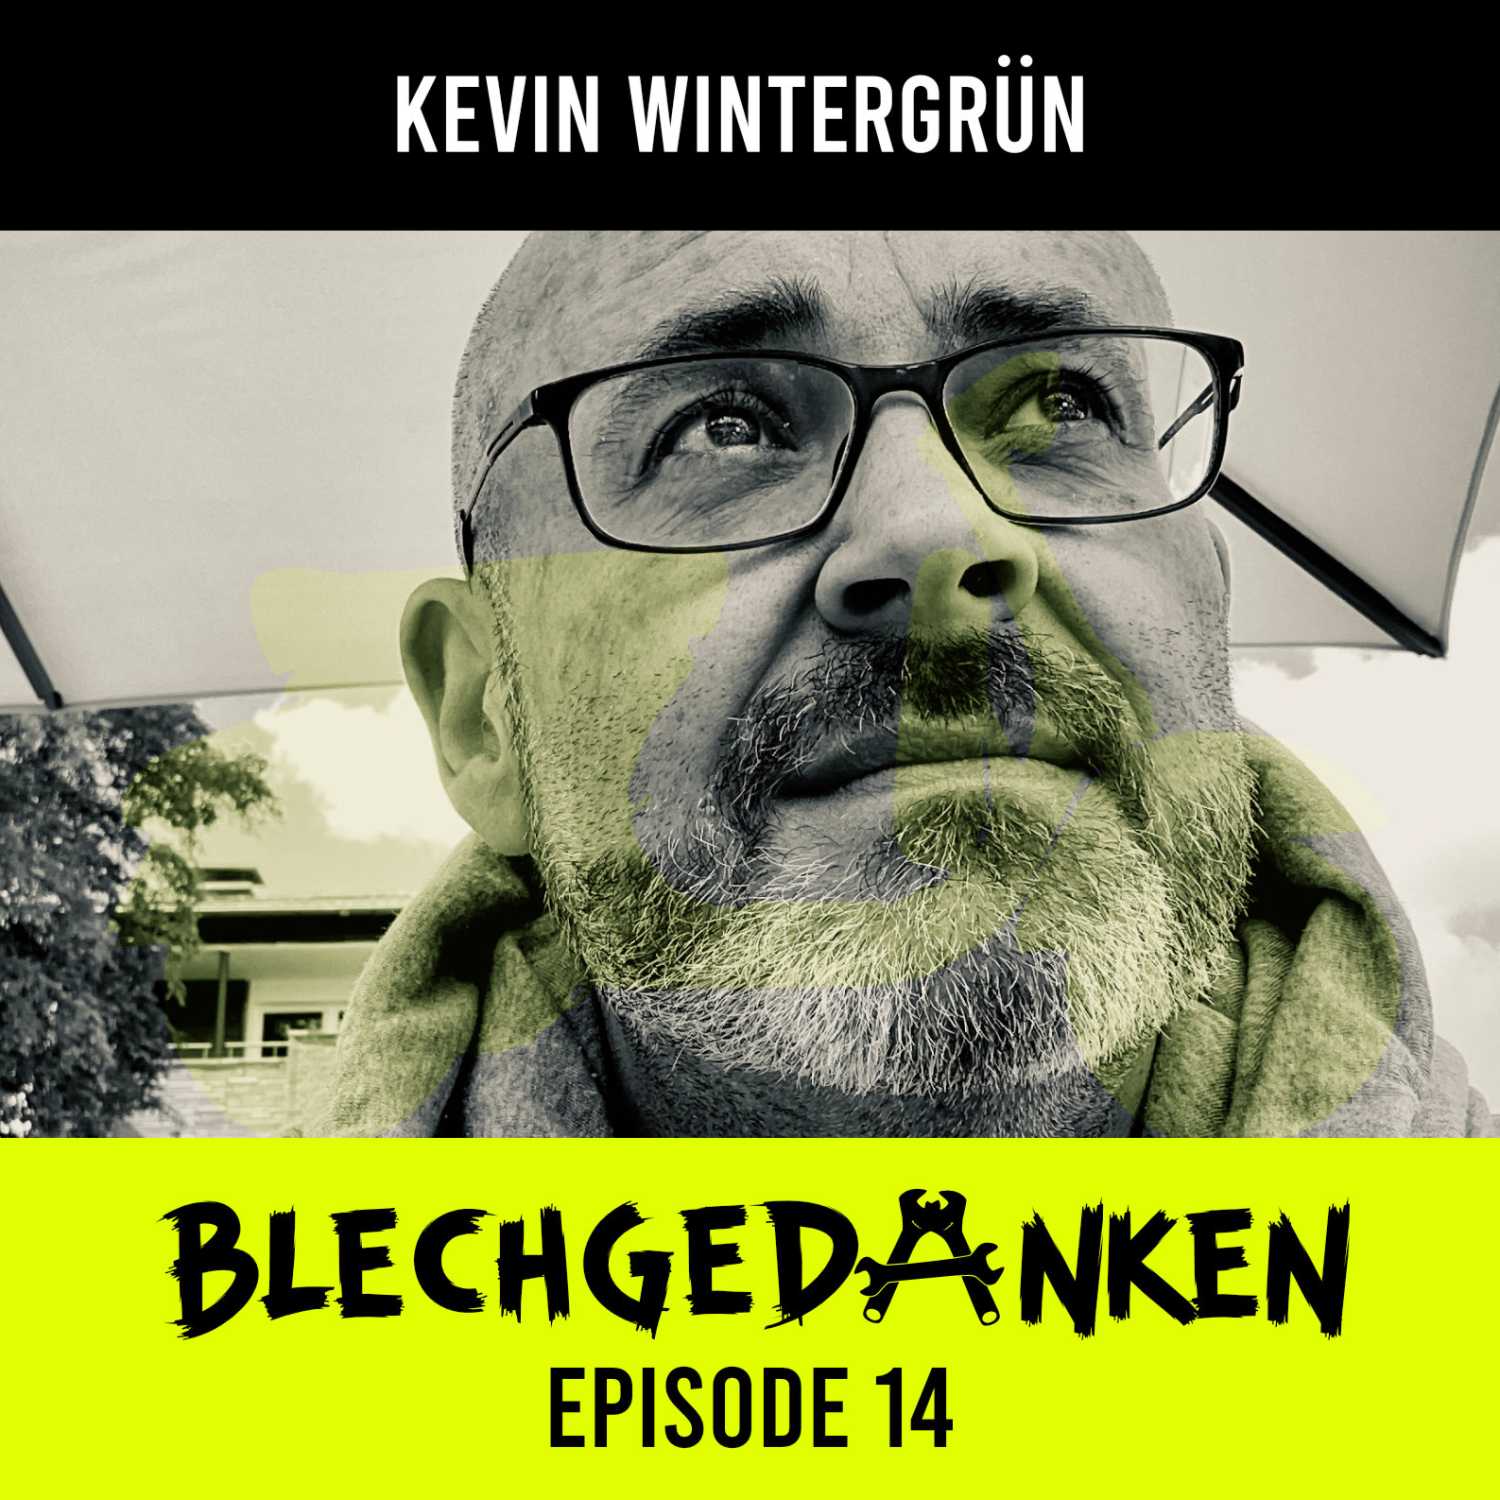 Blechgedanken Episode 14 - Kevin Wintergrün – Wilde Roller & Motoren, Vergasern und Ständern – sowie pornöse Prinzen!